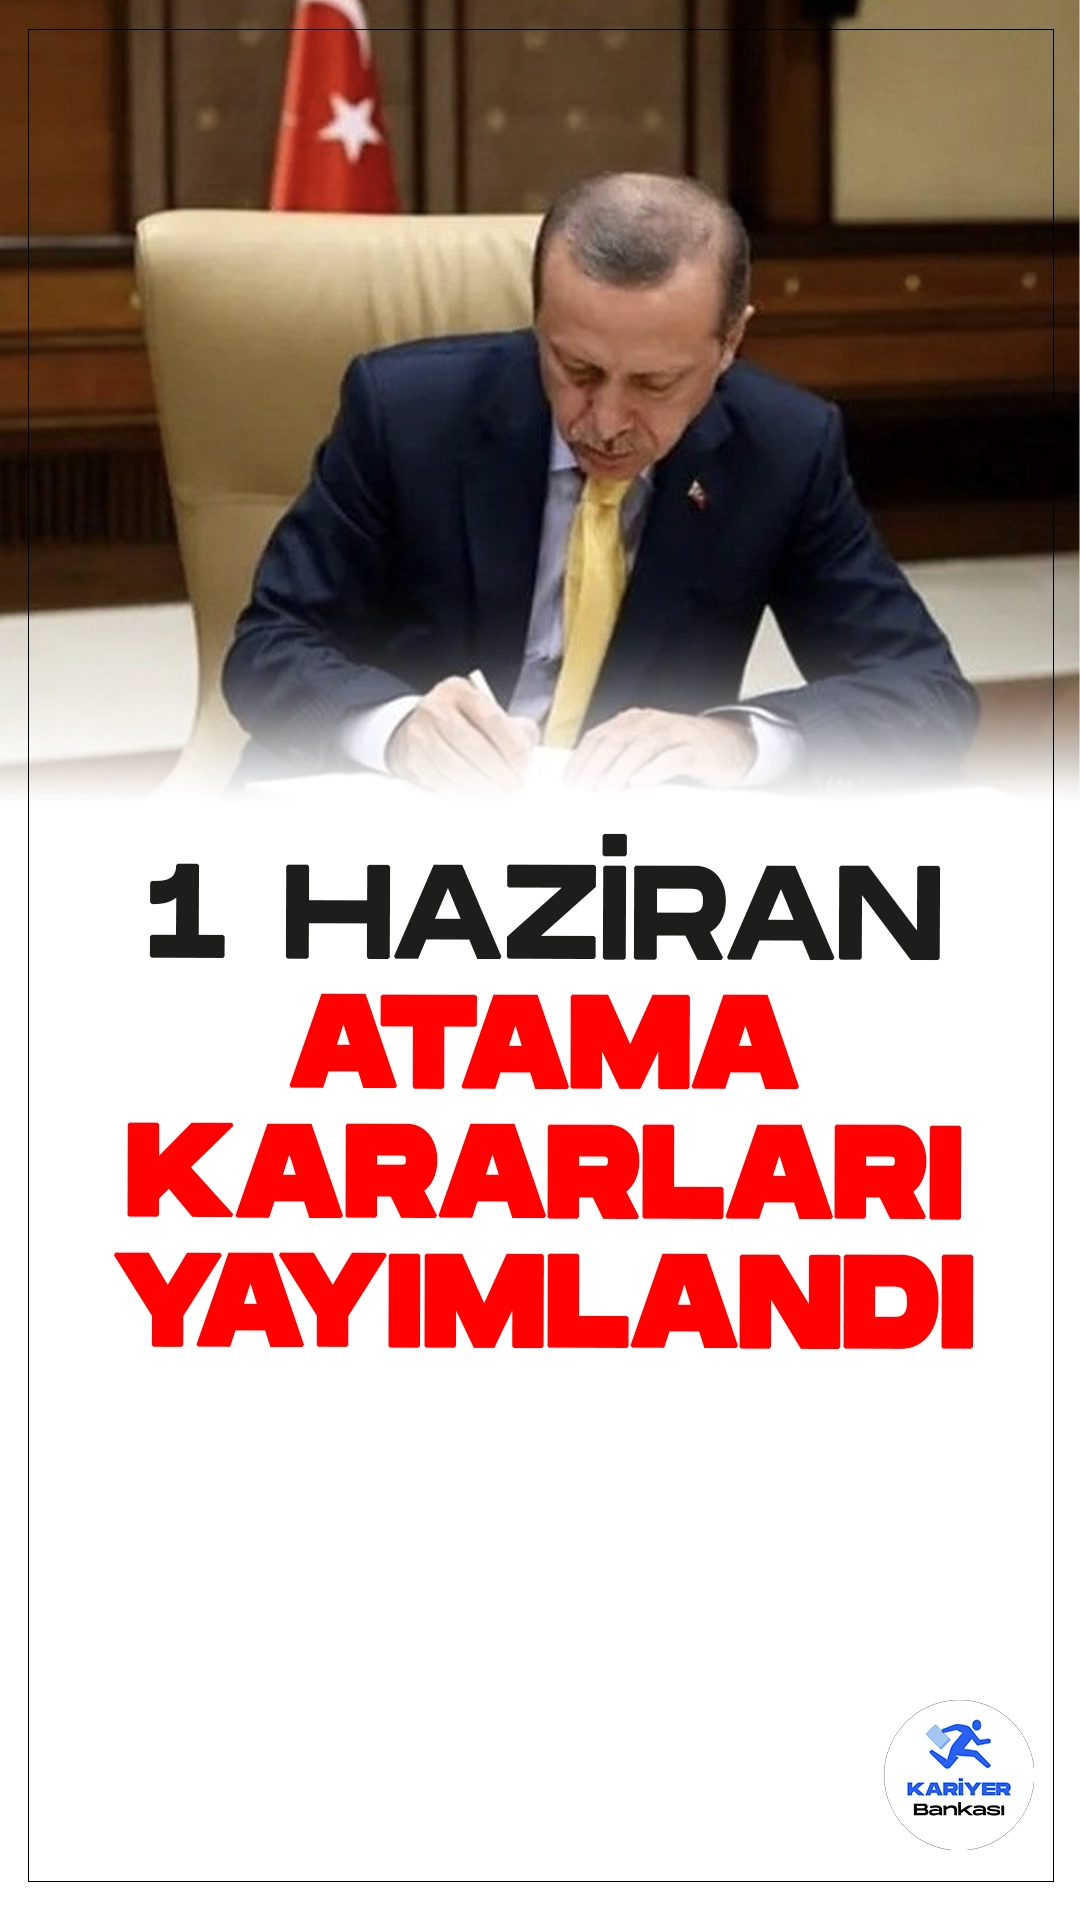 1 Haziran 2024 Atama Kararları Resmî Gazete’de Yayımlandı.Cumhurbaşkanı Recep Tayyip Erdoğan’ın imzasıyla yayımlanan kararlara göre, çeşitli bakanlık ve kurumlarda önemli görevlere yeni atamalar gerçekleştirildi.